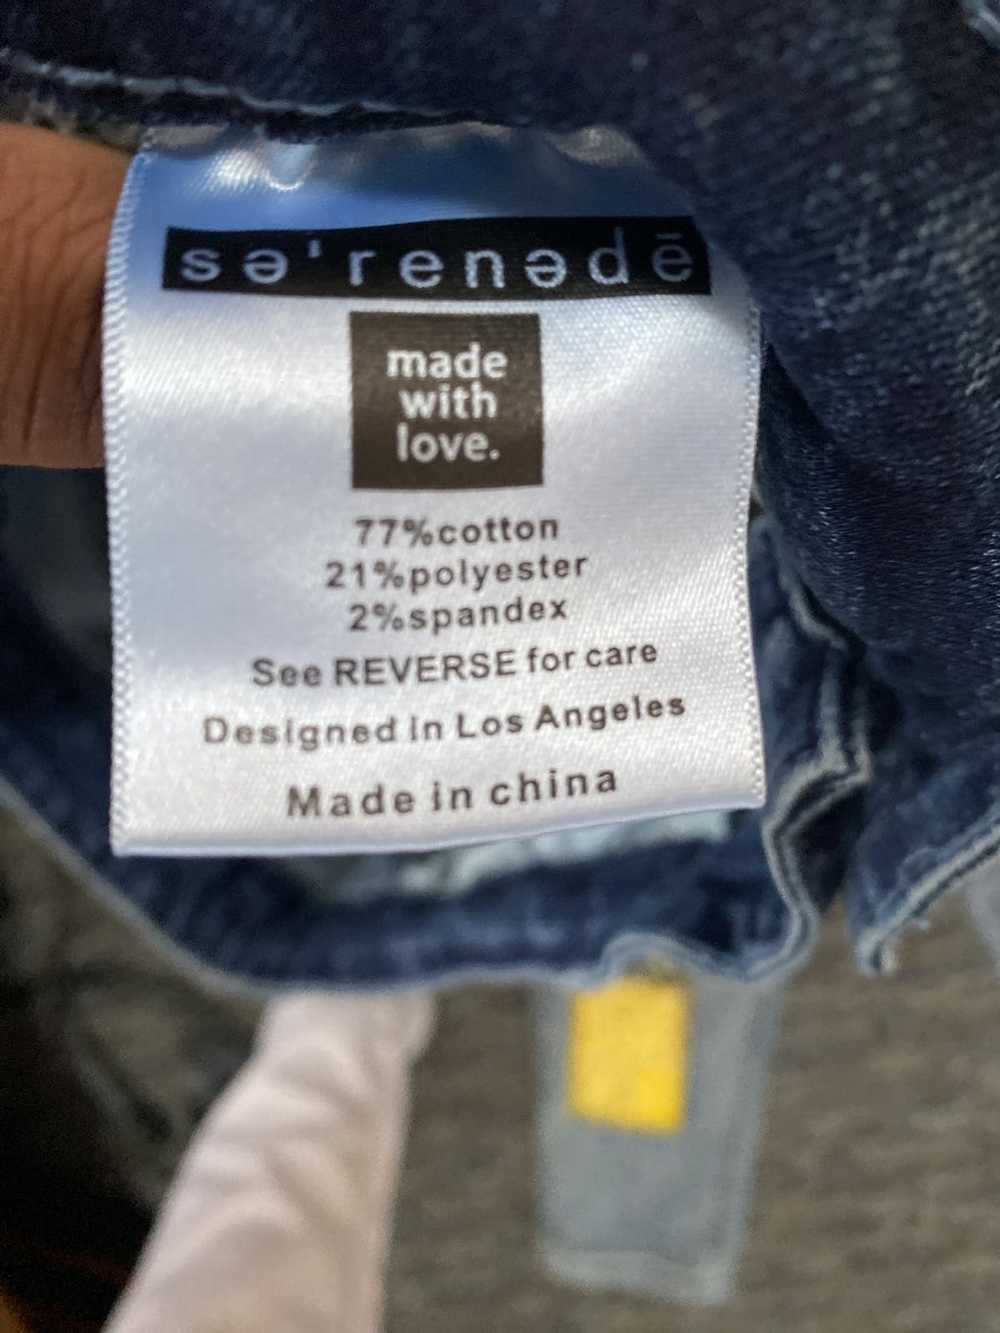 Designer Serenede jeans patch - image 3